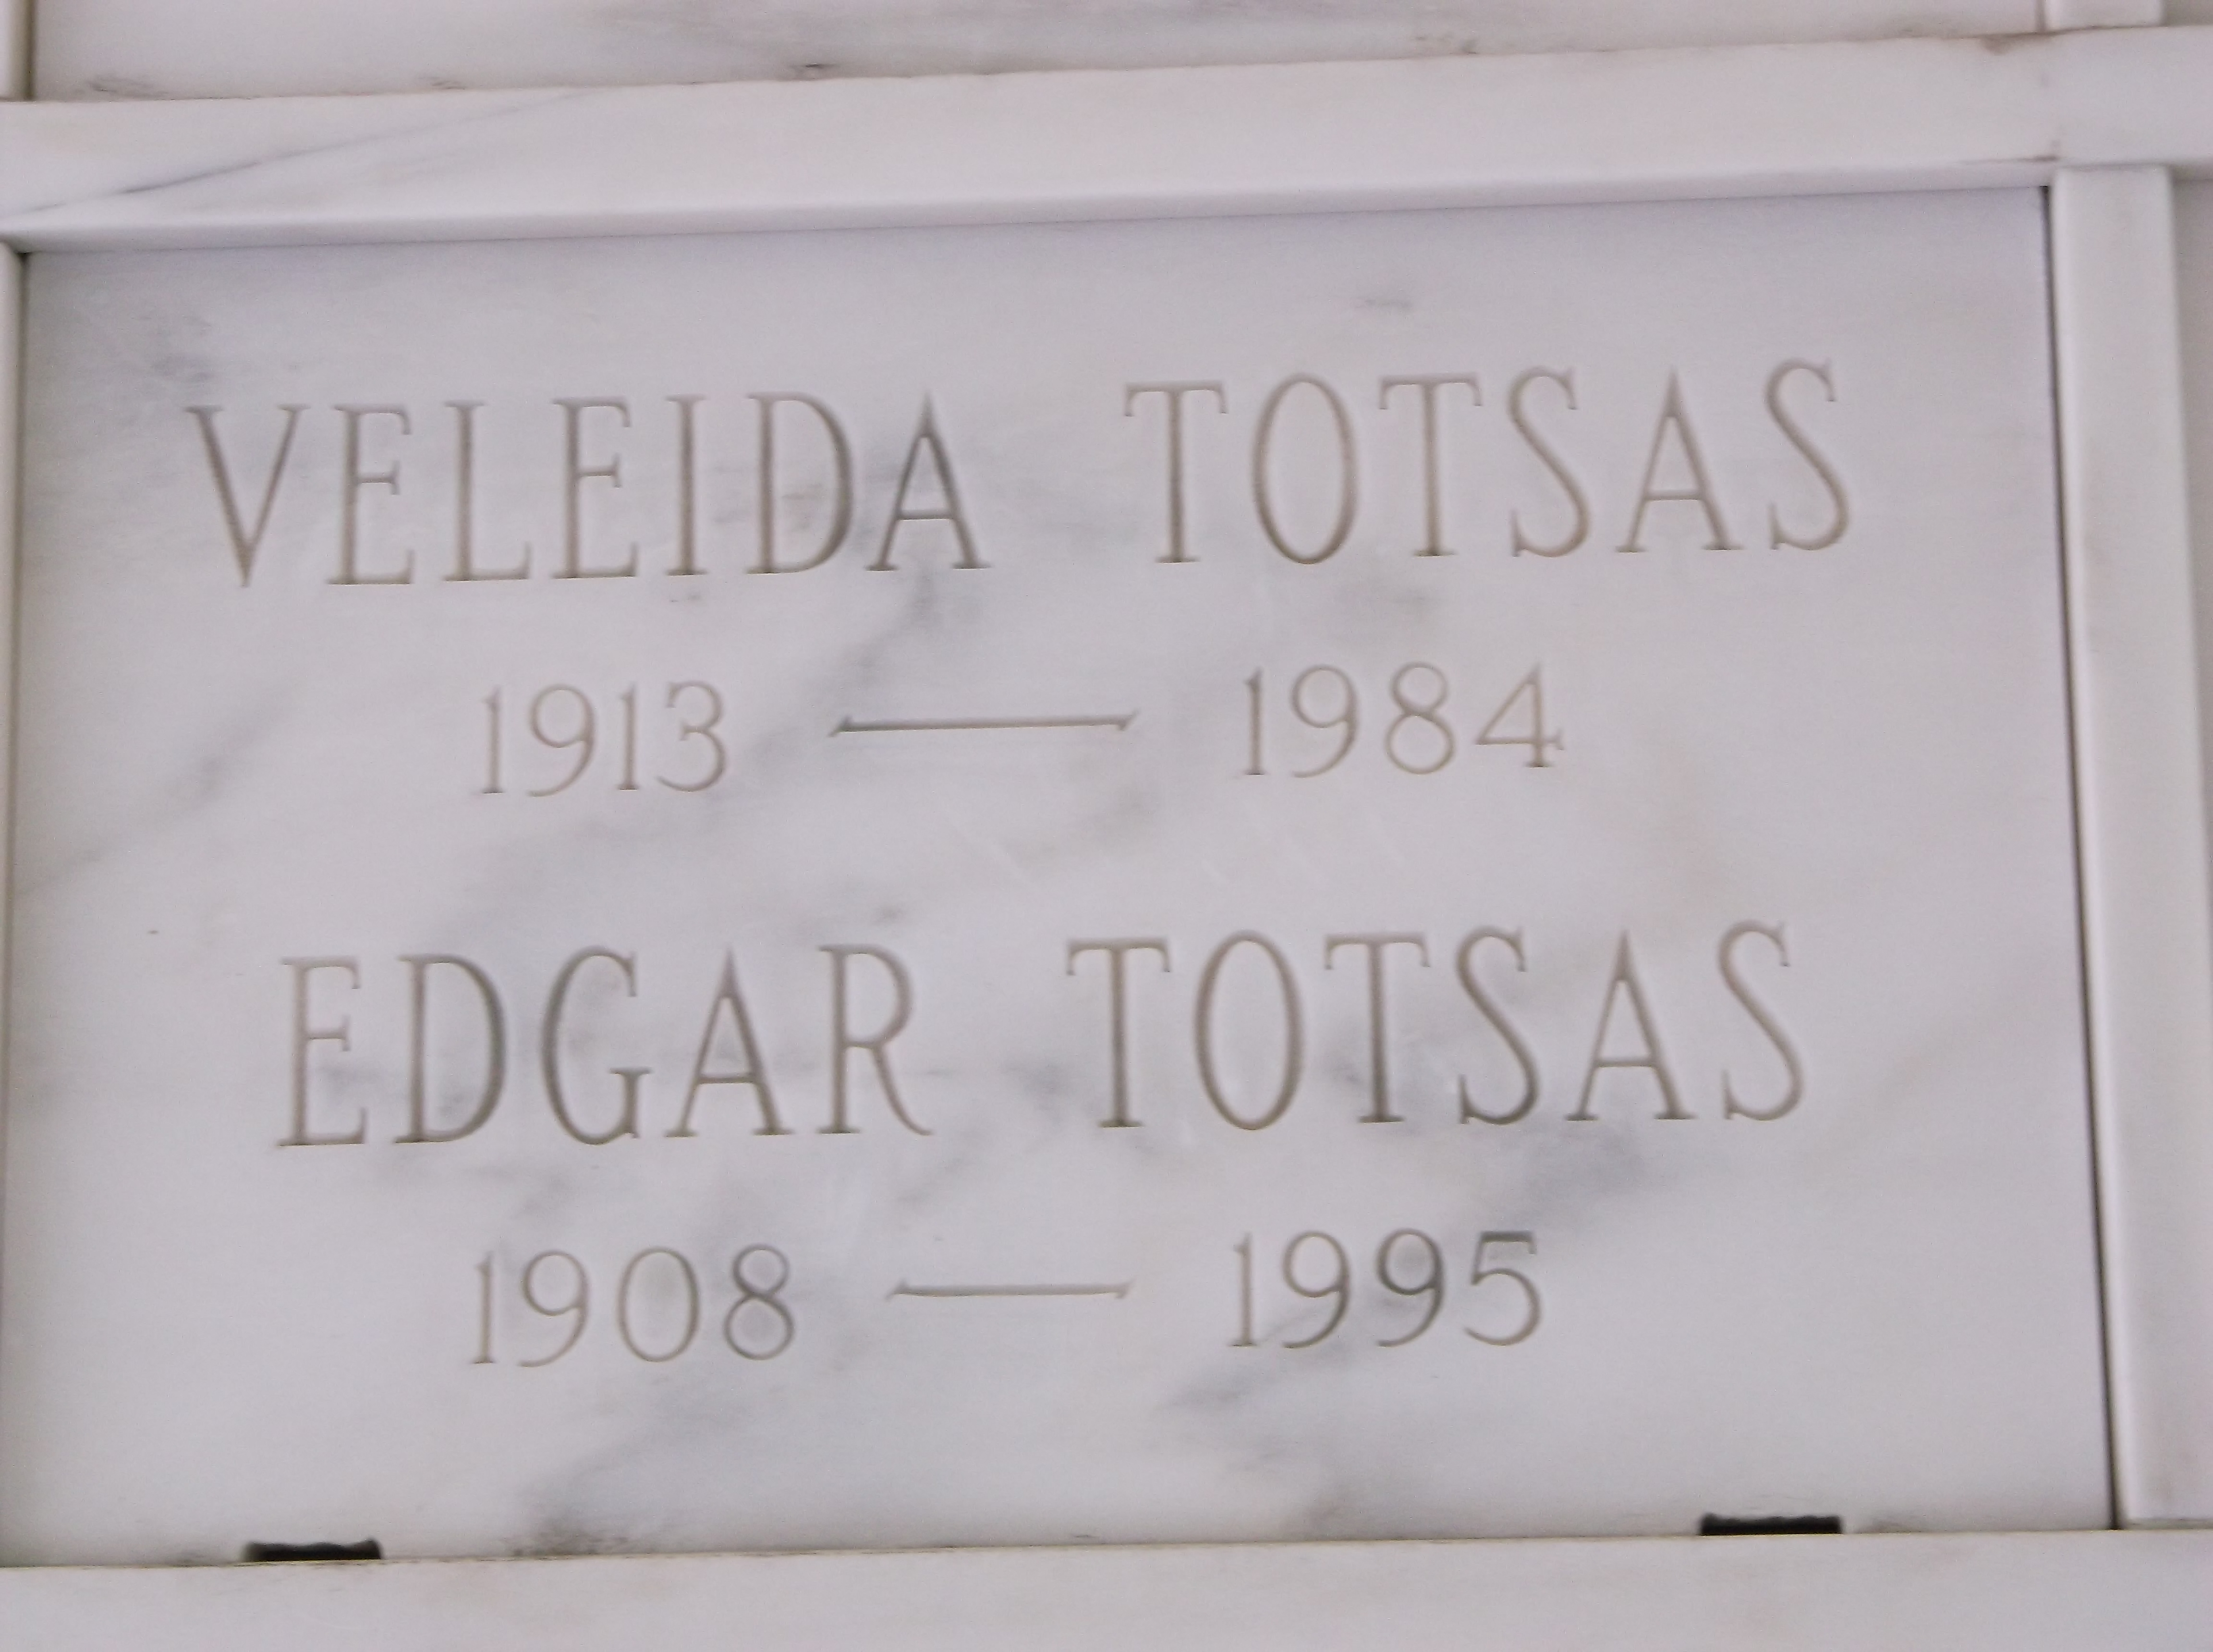 Edgar Totsas